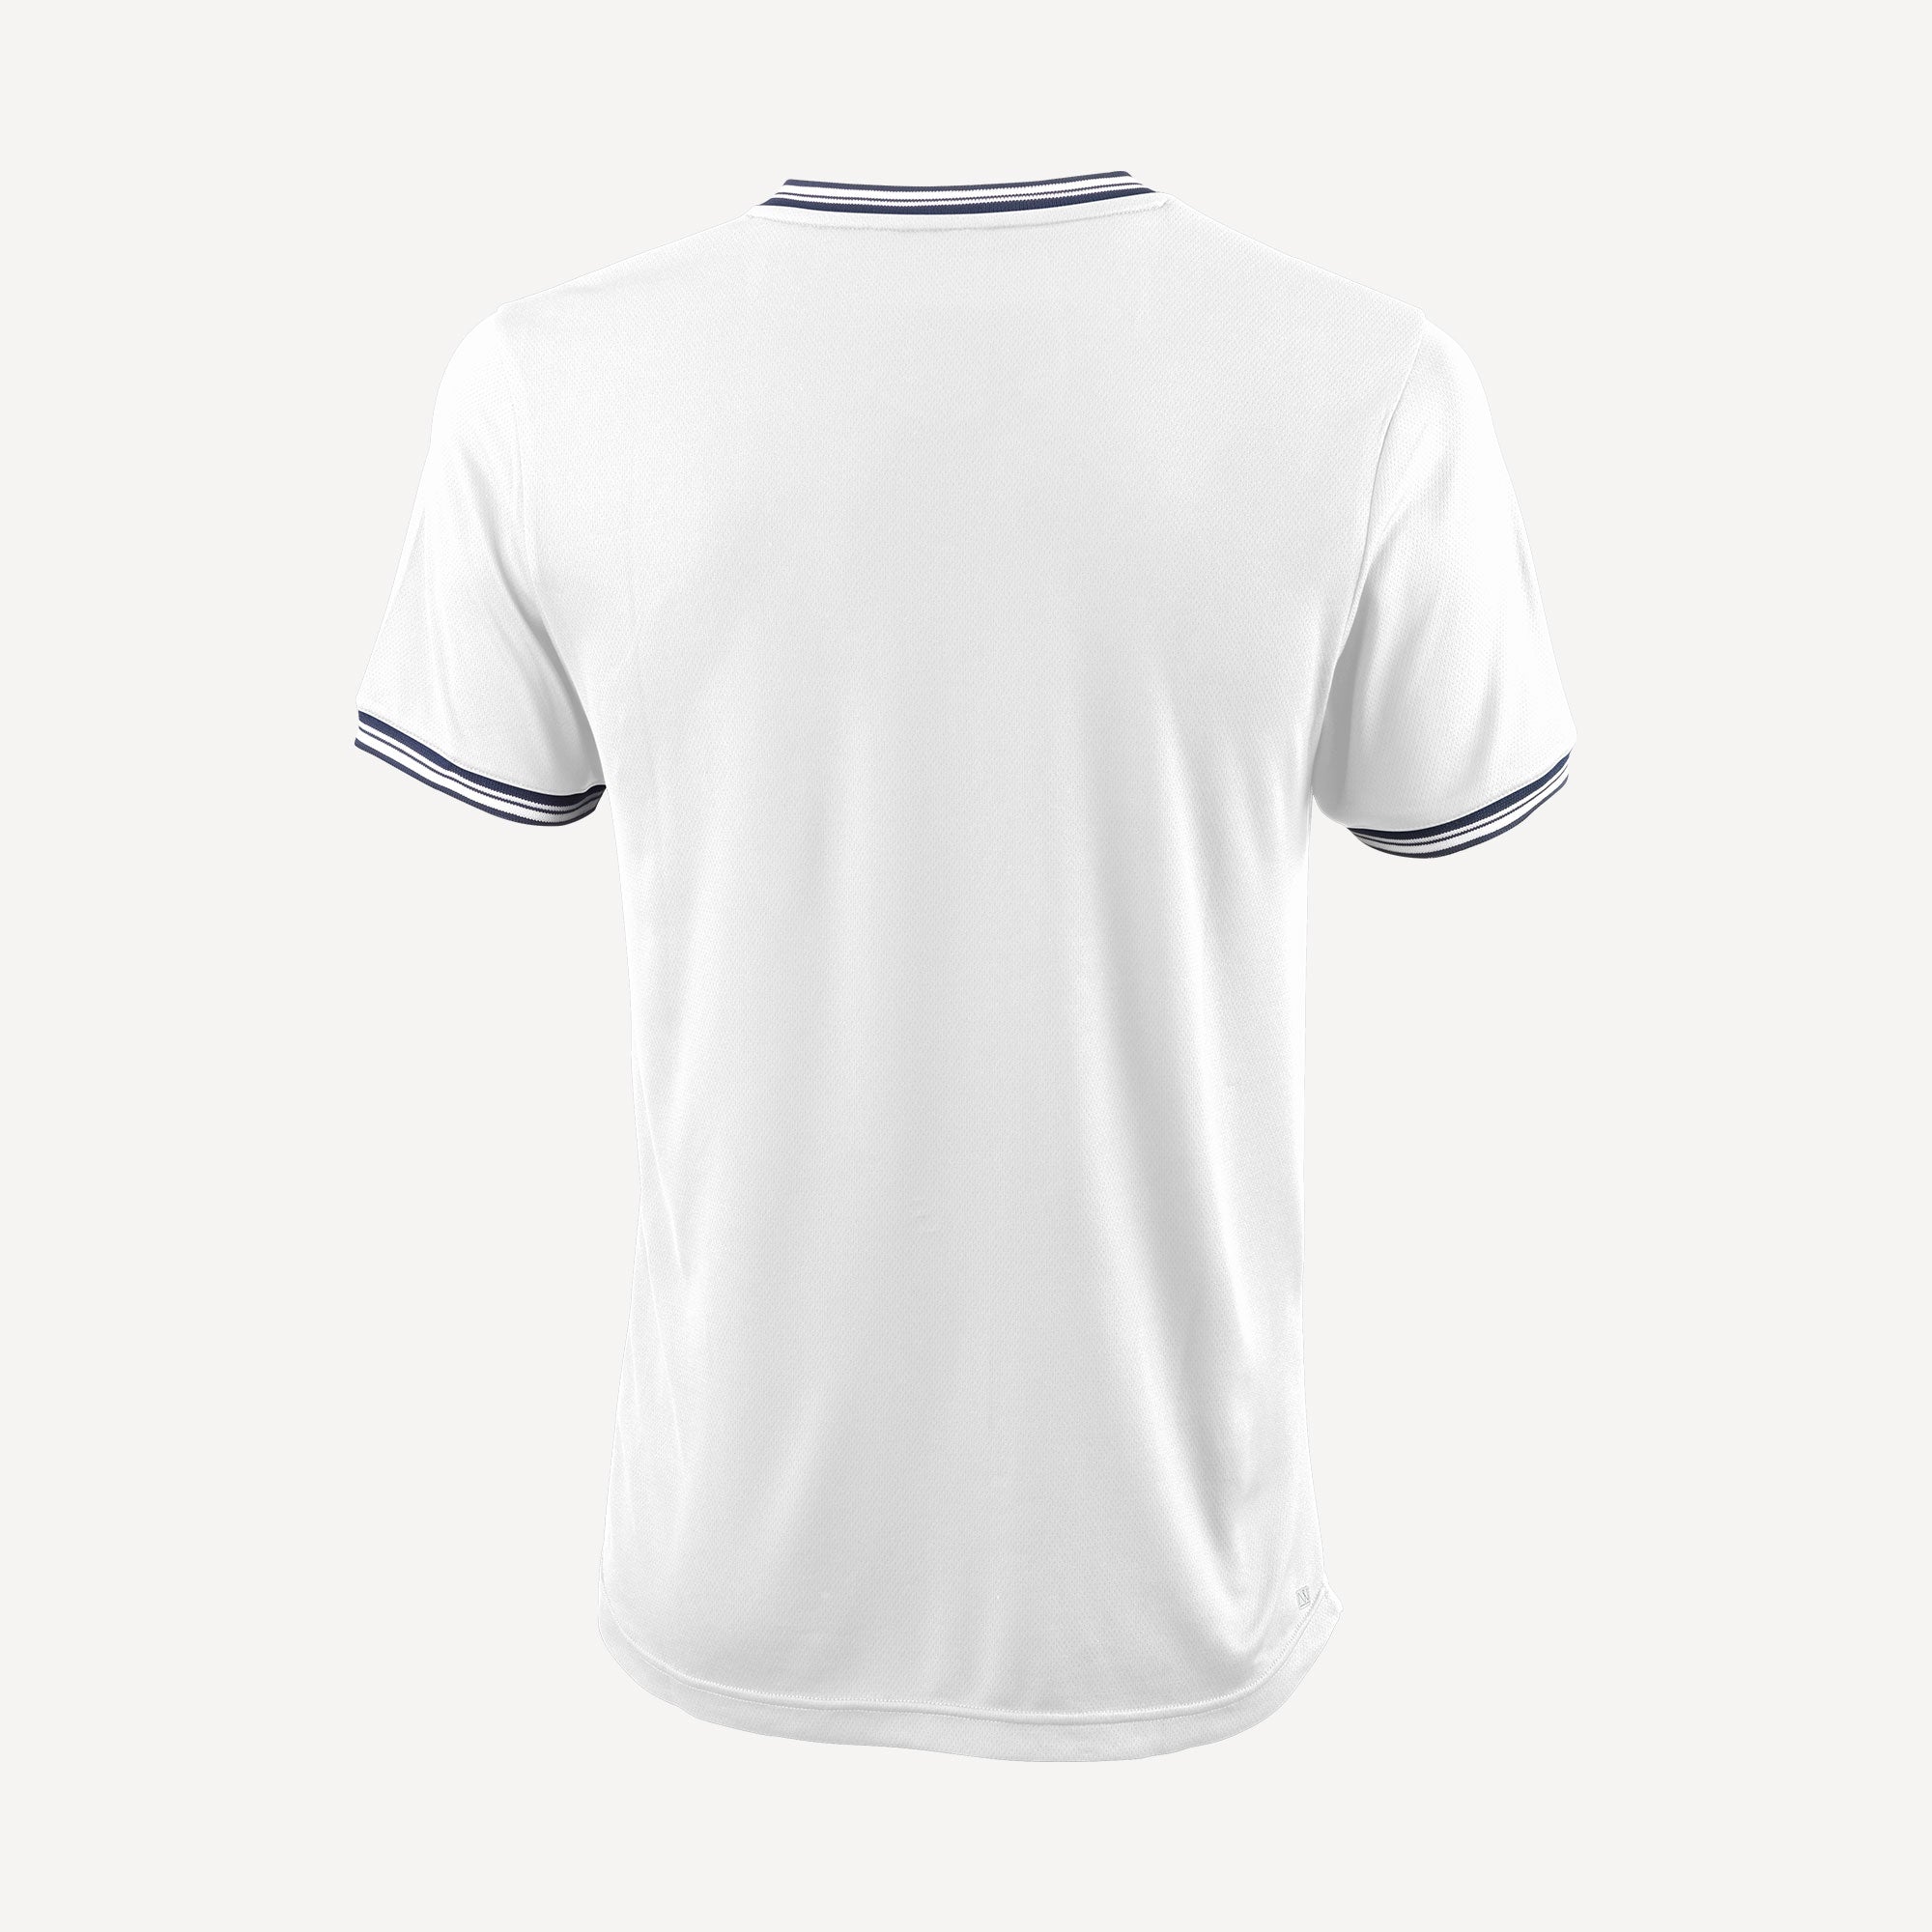 Wilson Team 2 Men's V-Neck Tennis Shirt White (2)